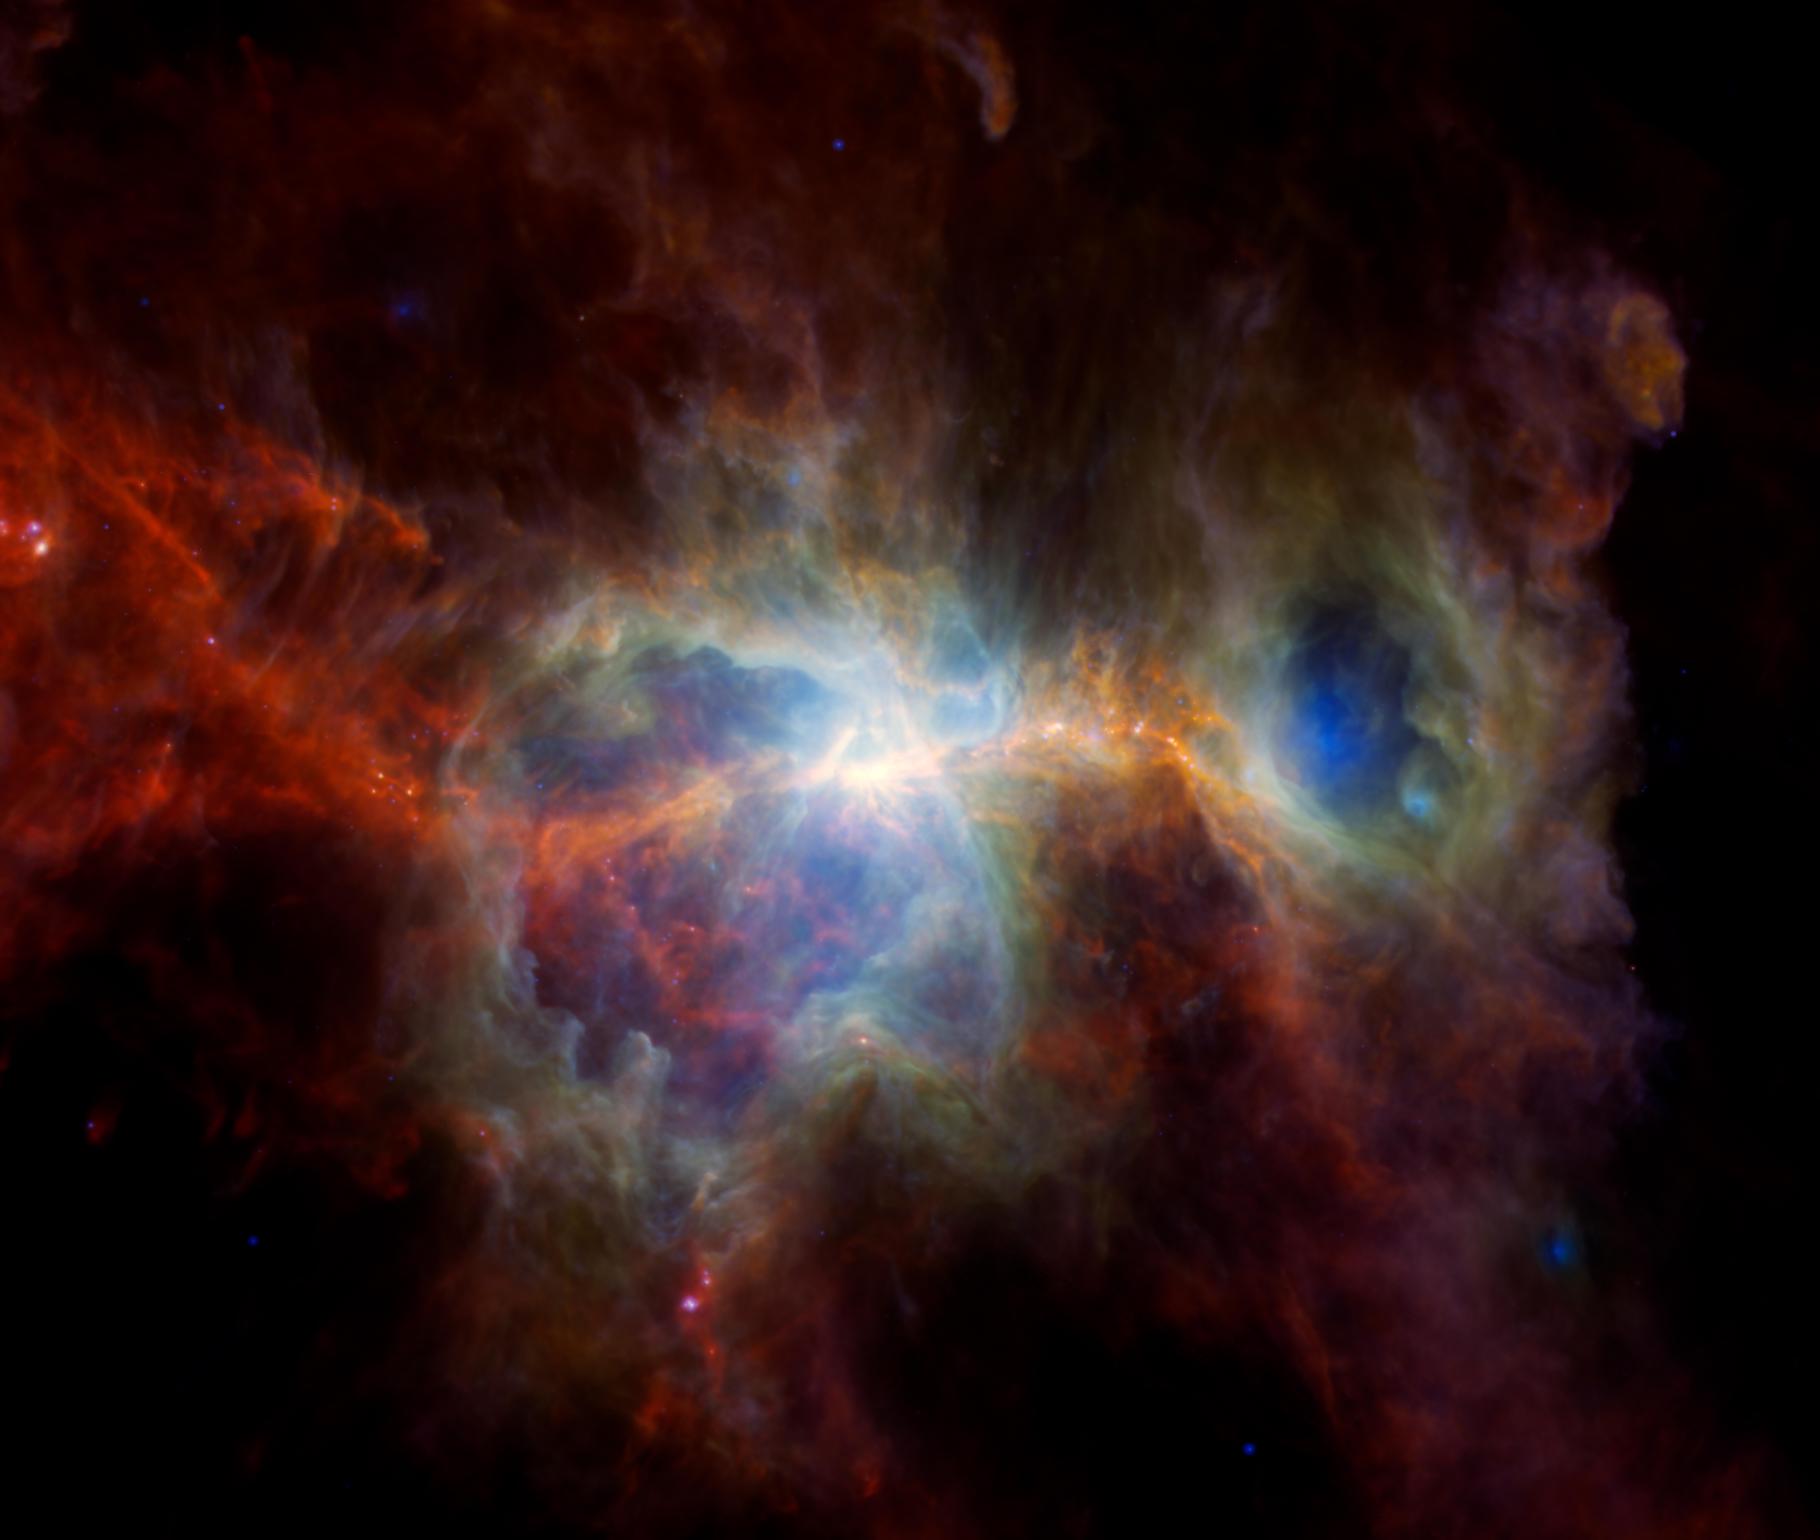 Une image inédite de la nébuleuse d’Orion raconte son histoire chaotique. © ESA, Nasa, JPL-Caltech